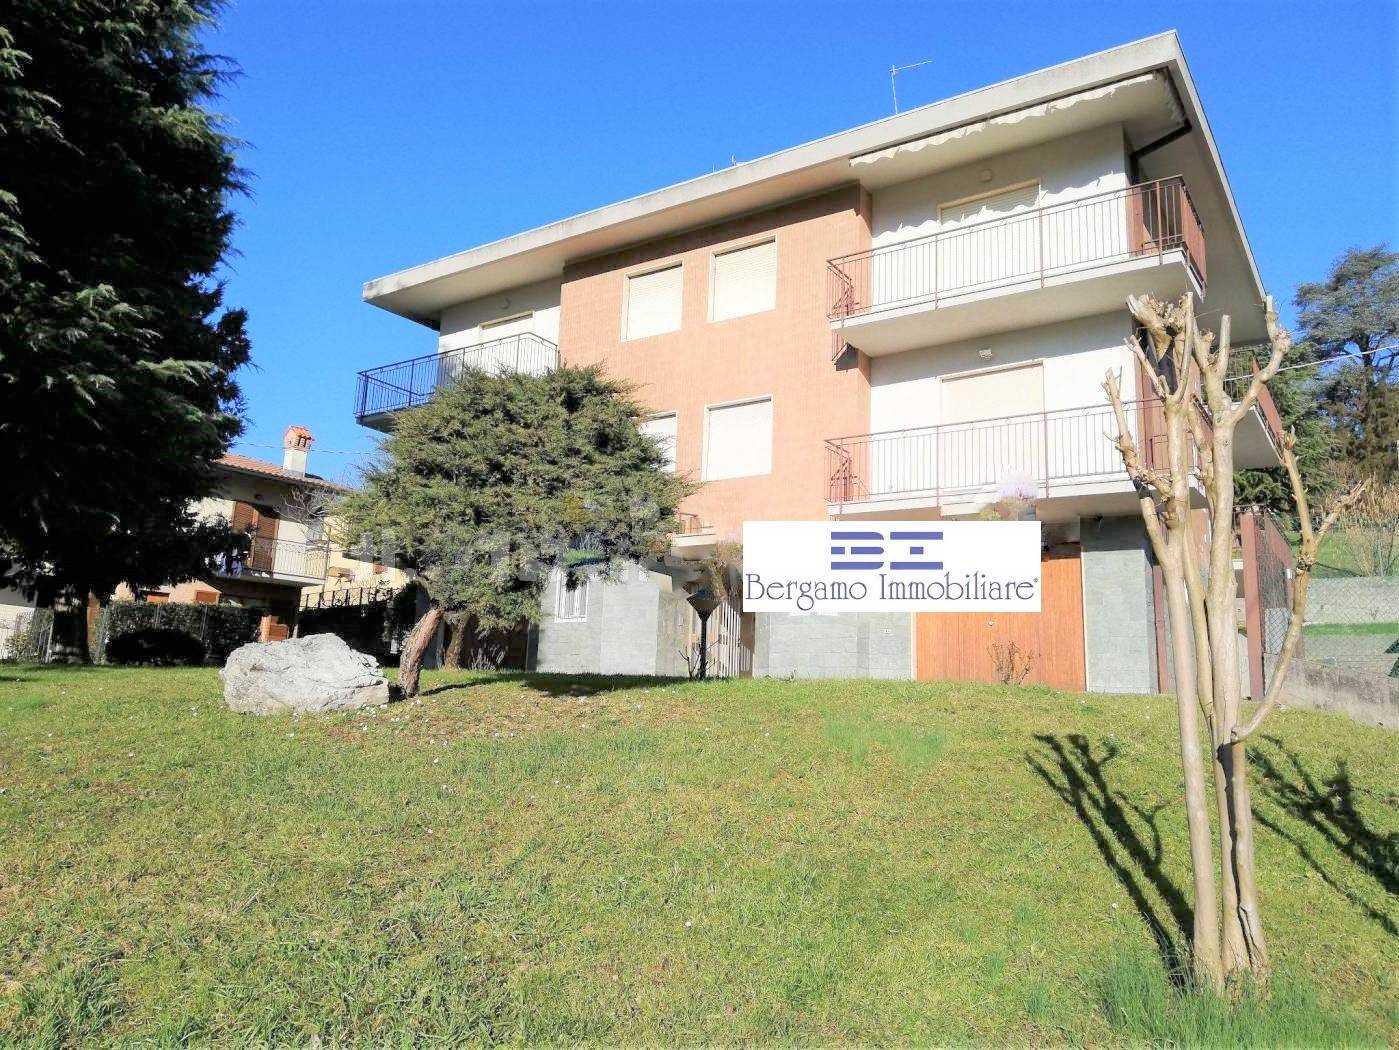 Appartamento in vendita a Ponteranica, 5 locali, prezzo € 330.000 | CambioCasa.it